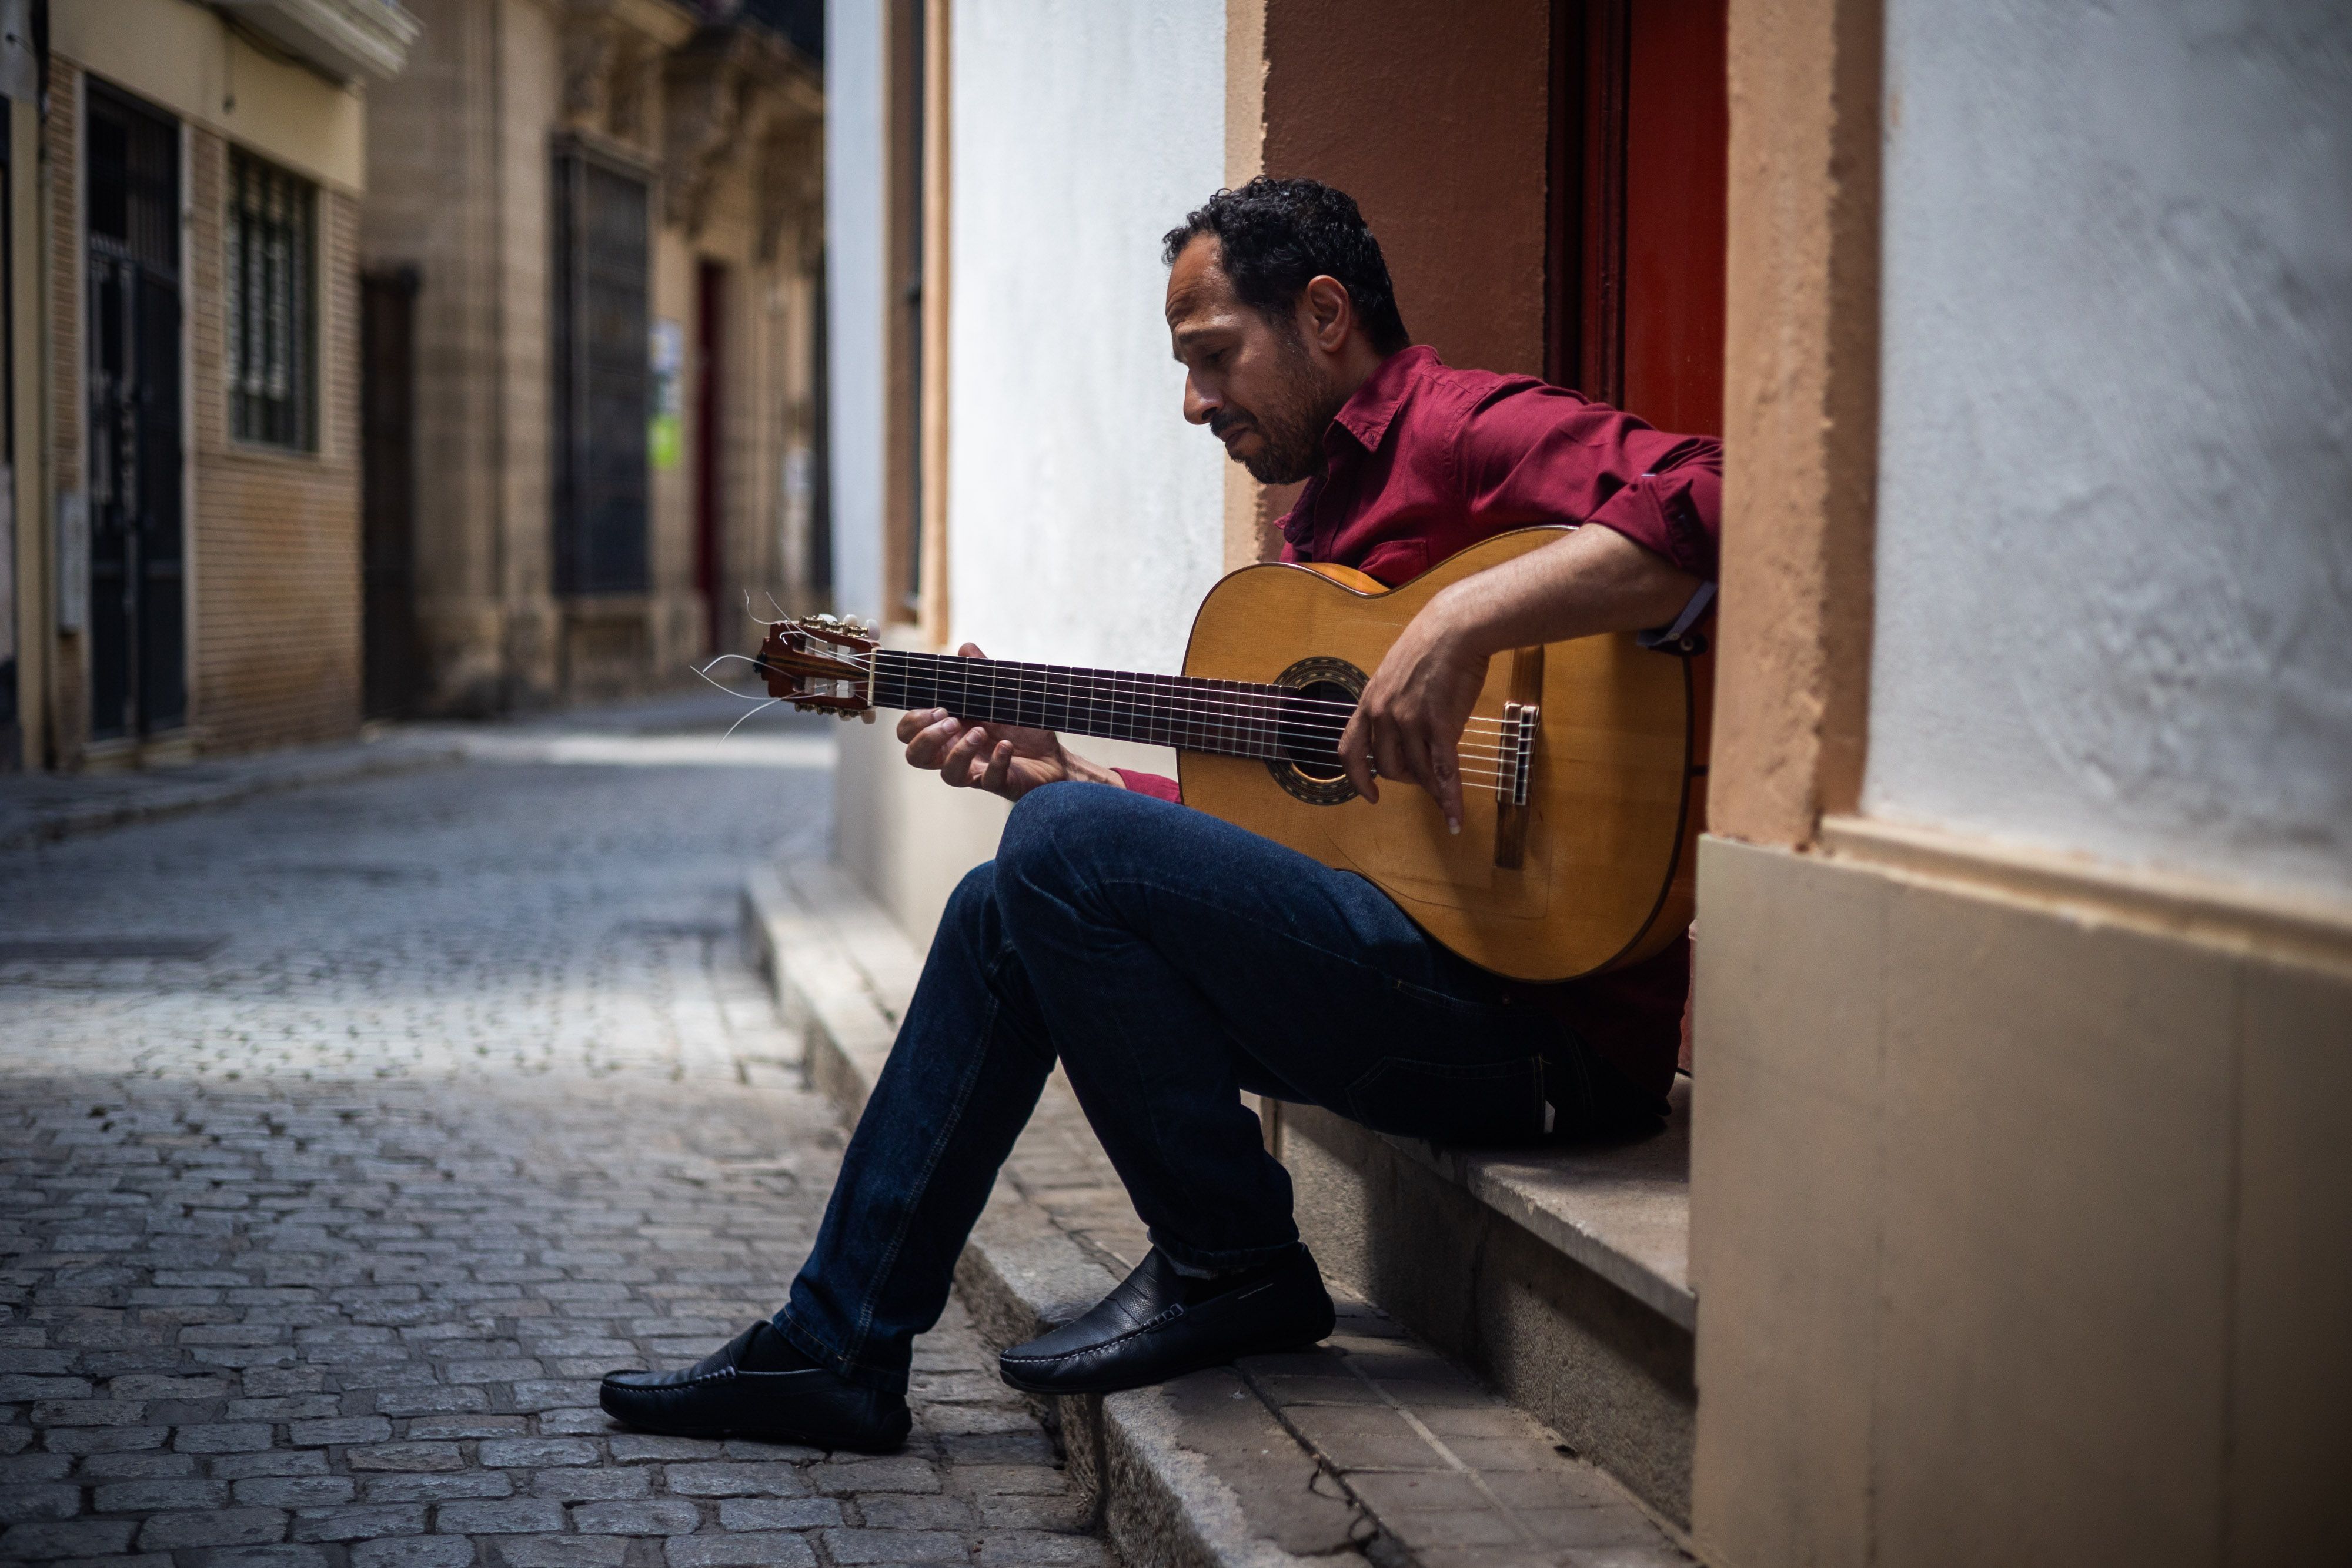 El guitarrista egipcio considera a Jerez como una ciudad "única", que conserva su identidad en unos tiempos difíciles